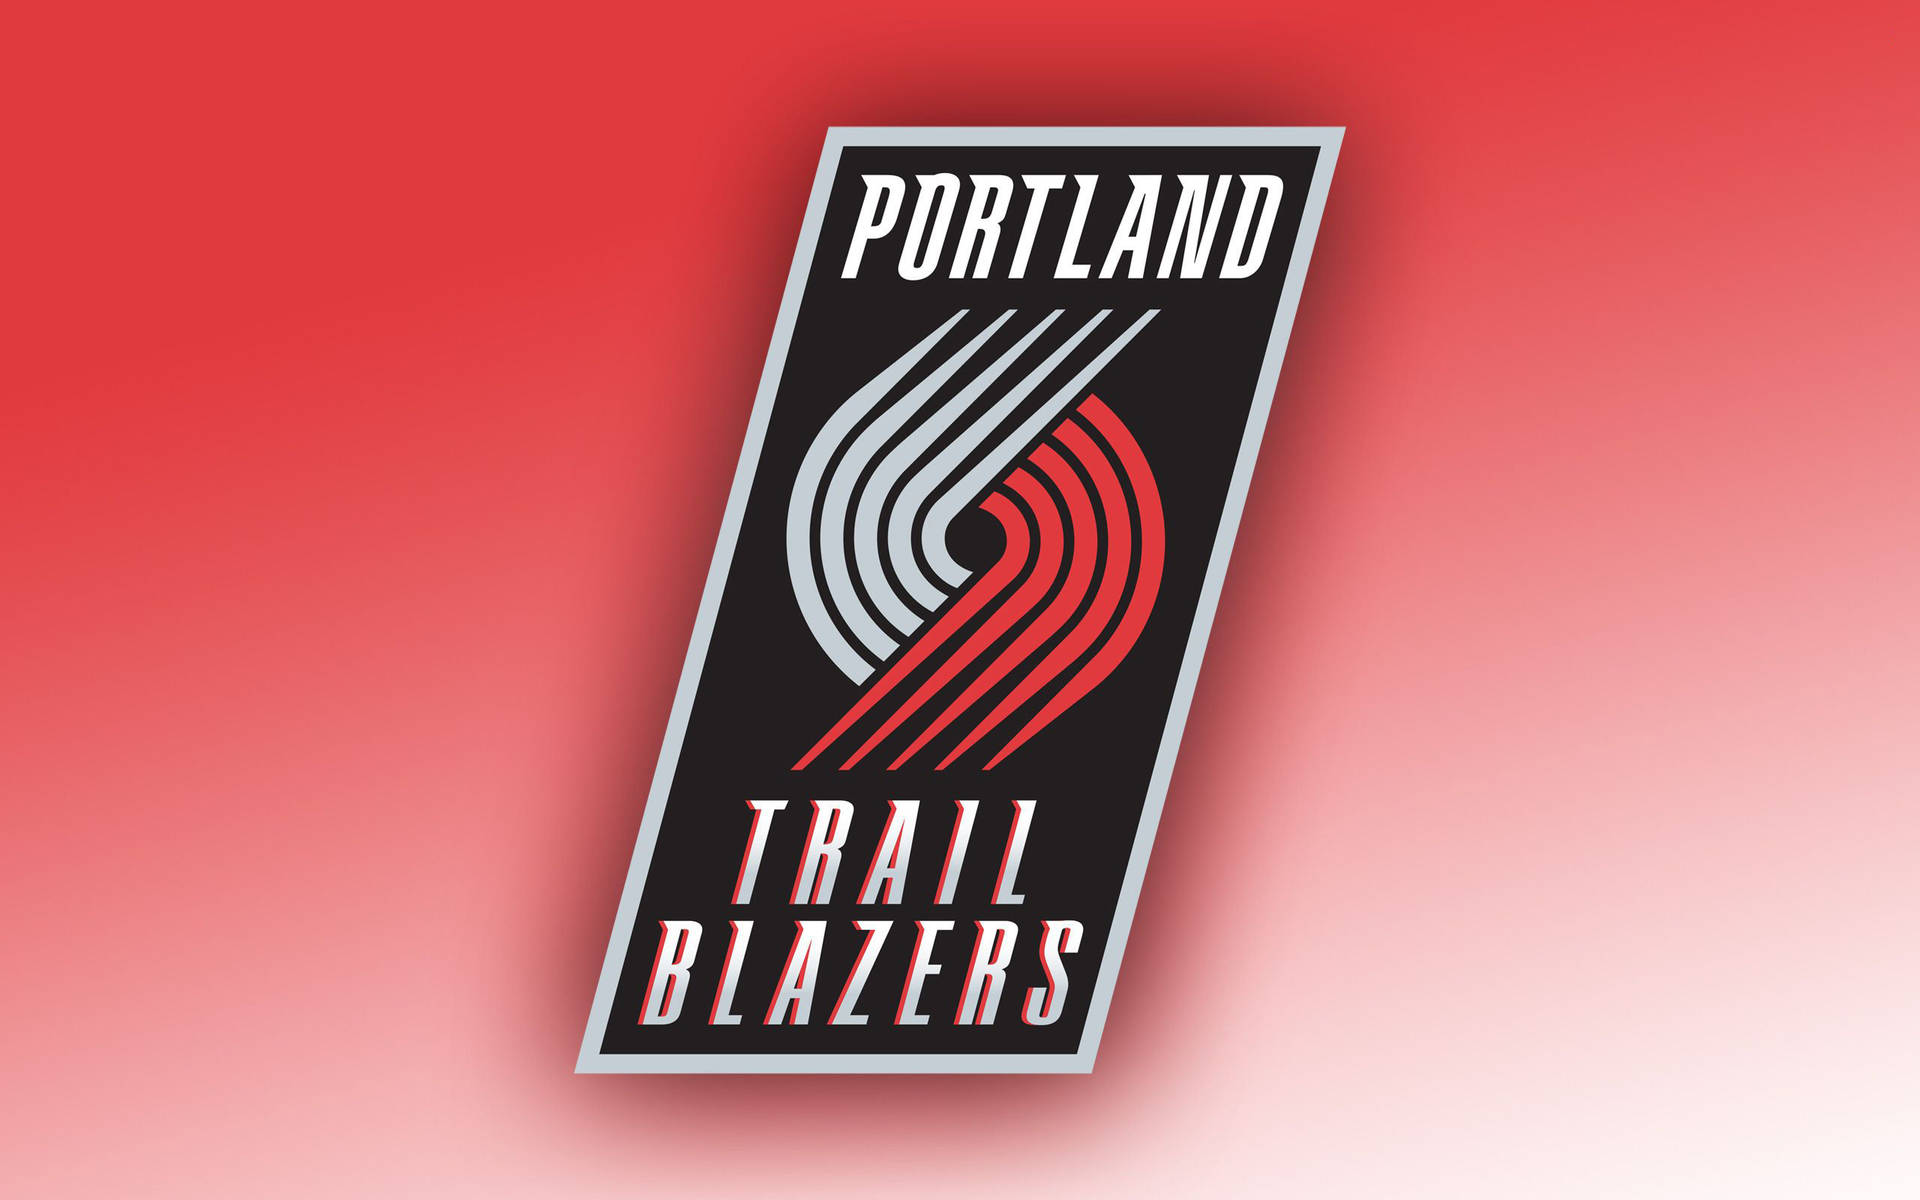 Portlandtrail Blazers Degradado Rojizo Fondo de pantalla